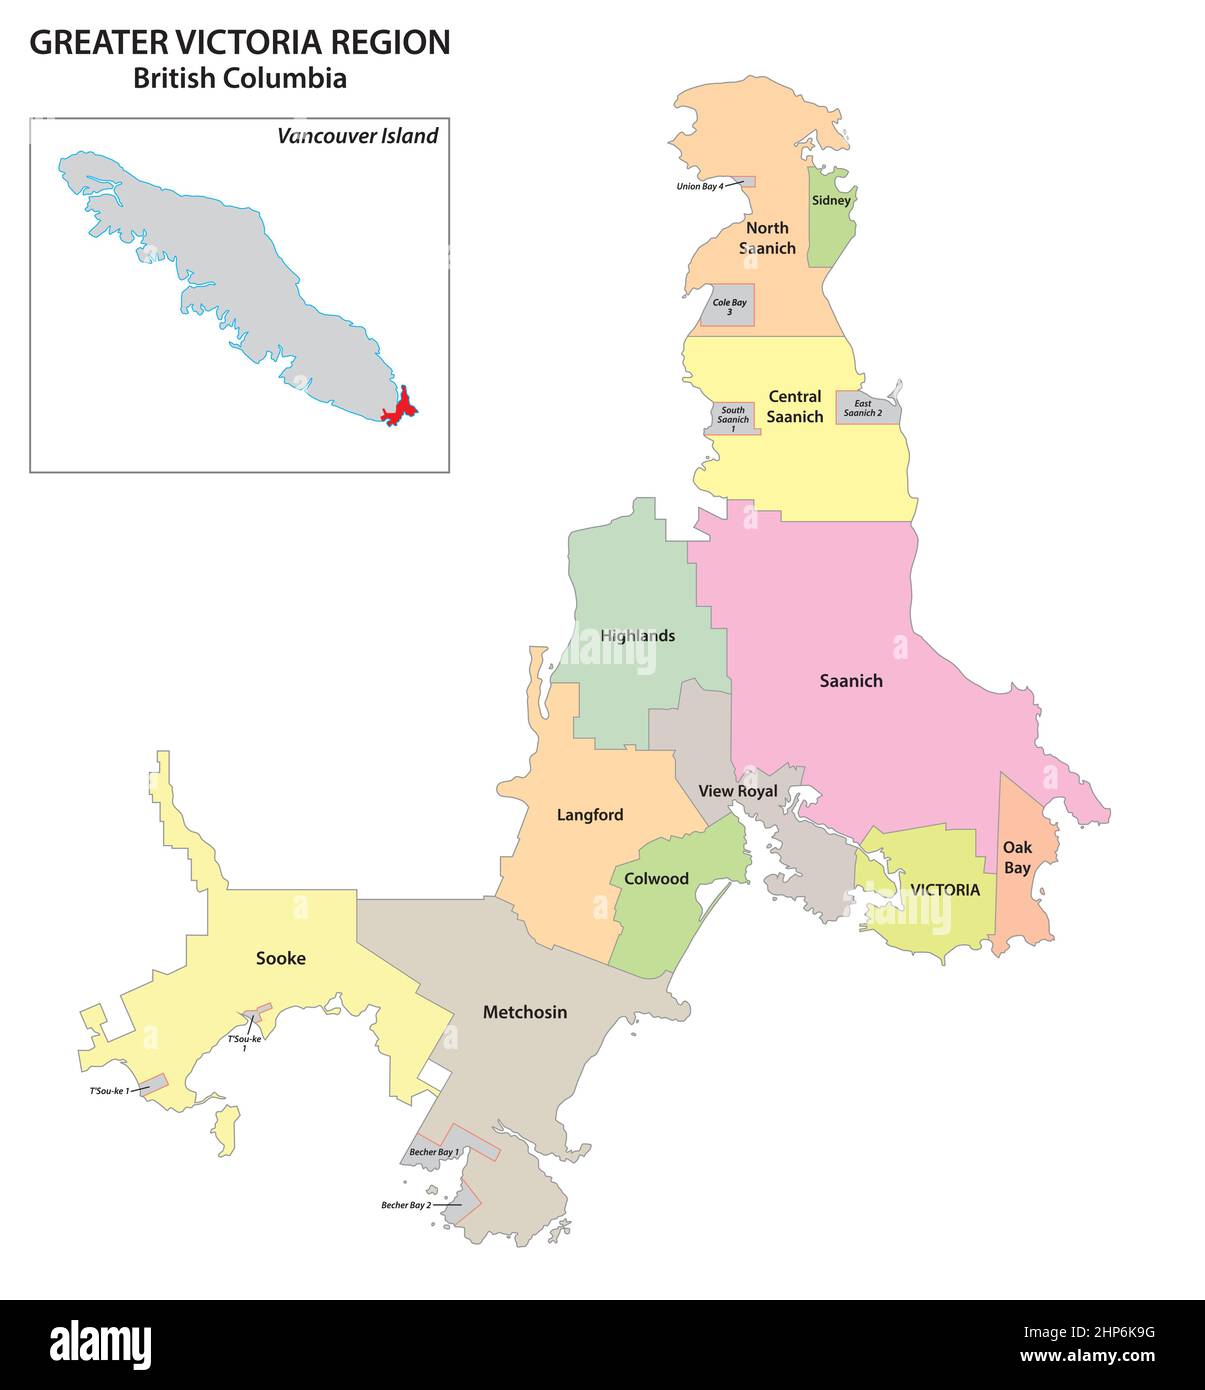 Carte administrative de la région du Grand Victoria, île de Vancouver, Colombie-Britannique, Canada Illustration de Vecteur